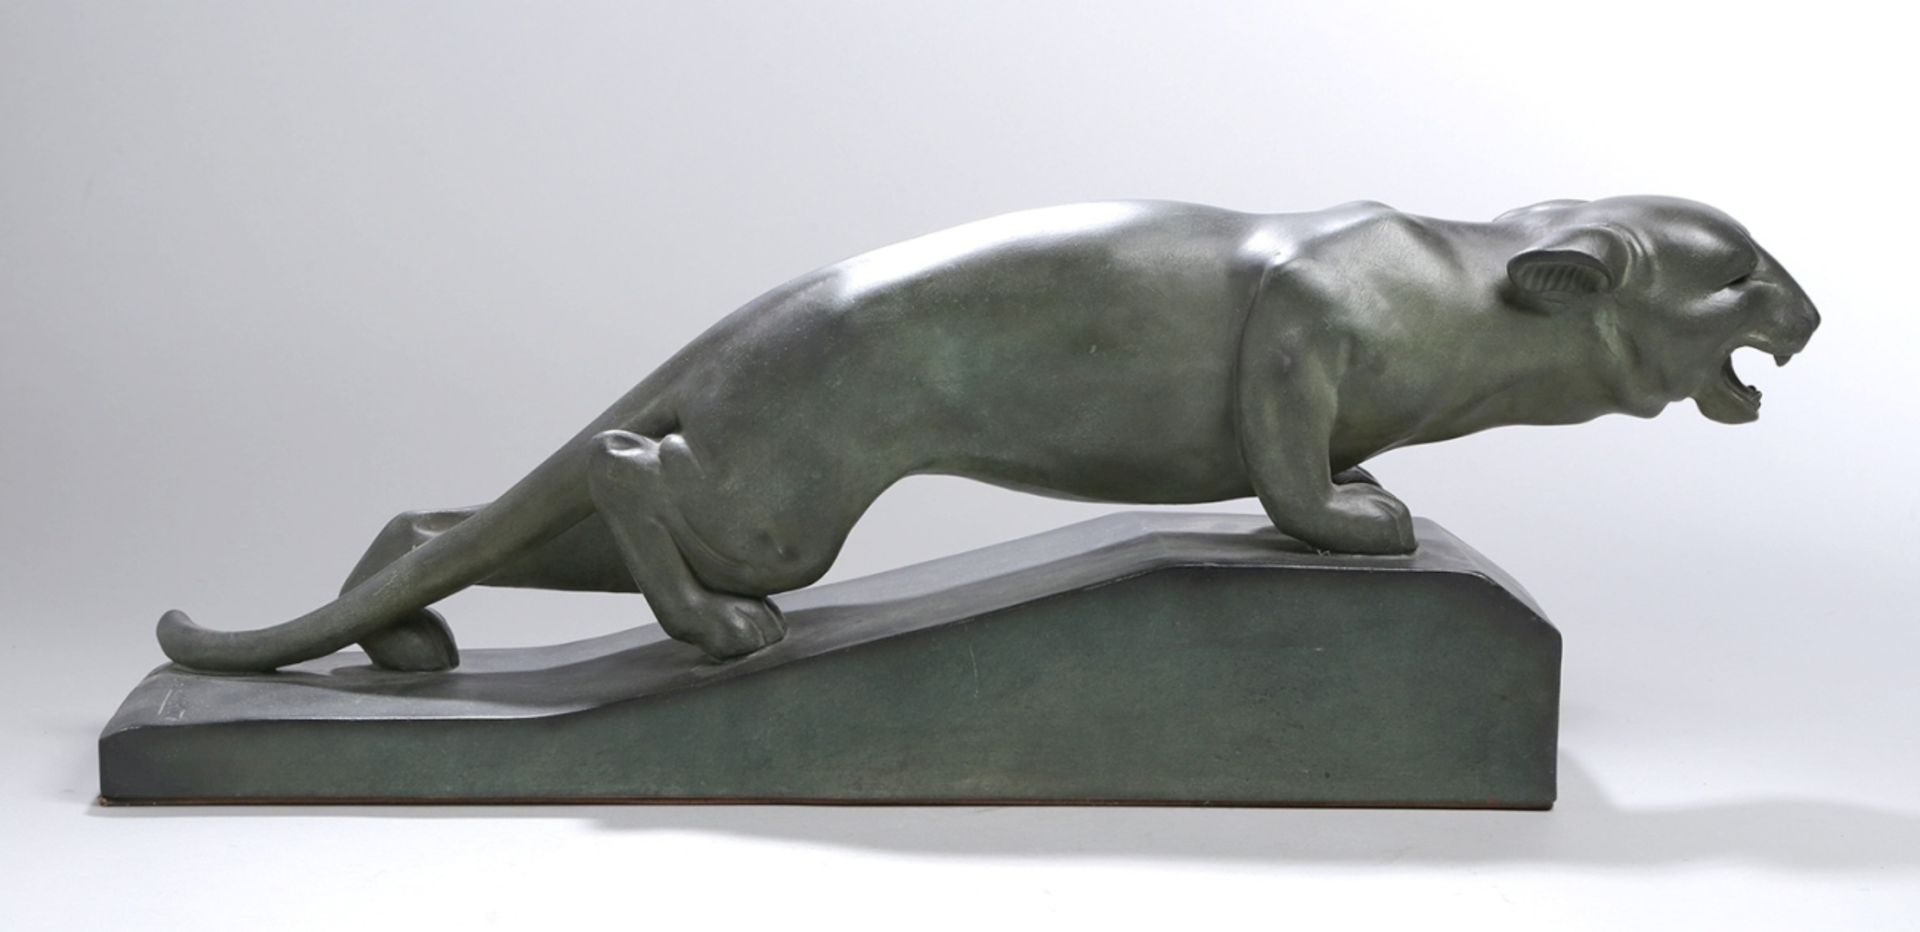 Terracotta-Tierplastik, "Panther", G. H. Laurent, französischer Bildhauer um 1930, aufansteigen